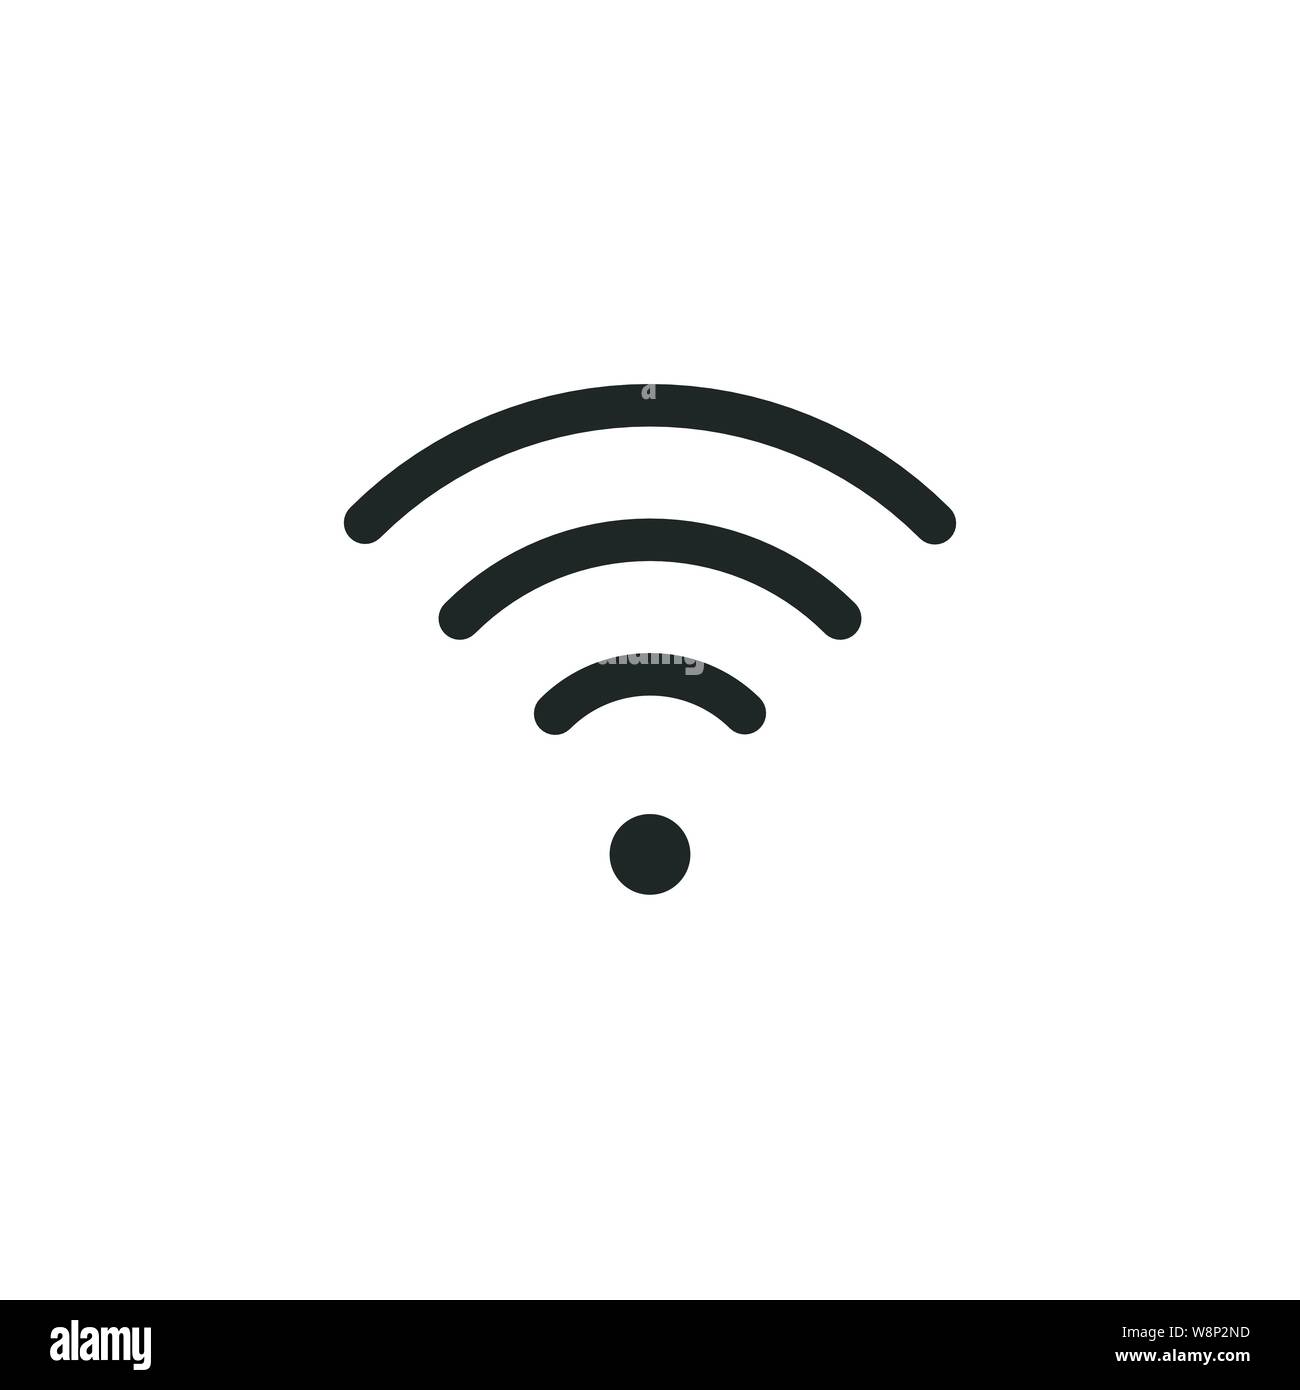 L'icona Wifi. Vettore di accesso WLAN, wireless hotspot wifi segnale SIGN, icona, simbolo. Illustrazione di vettore isolato su sfondo bianco. Illustrazione Vettoriale